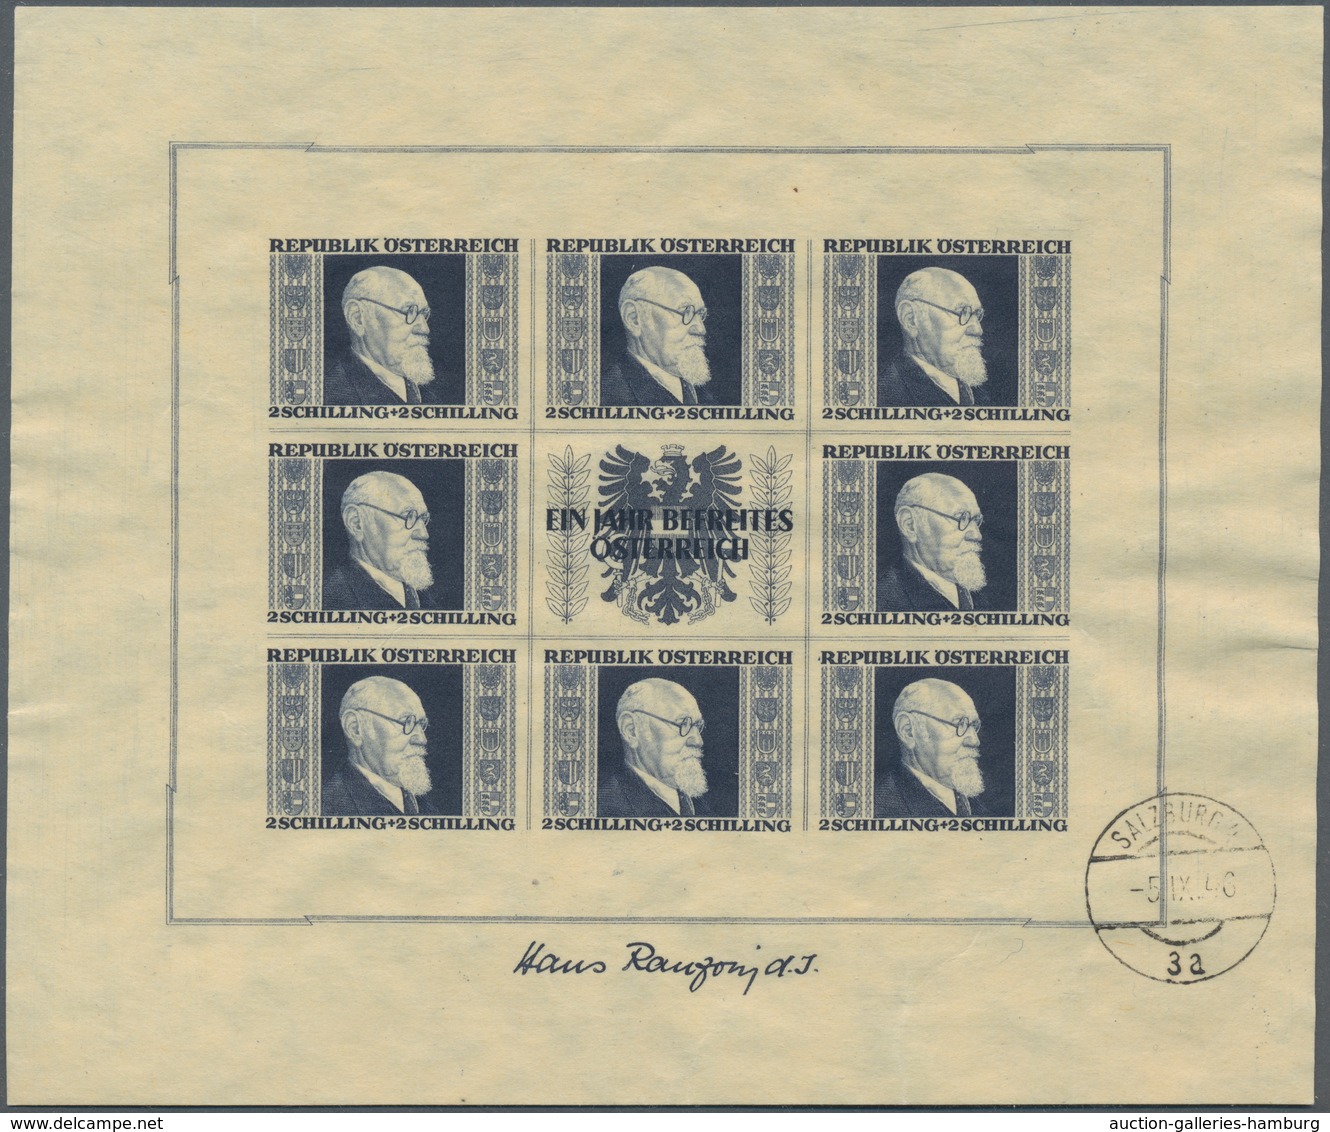 Österreich: 1946, 1 S, 2 S, 3 S und 5 S jeweils im Kleinbogen (sog. RENNER-Blocks) entwertet in der